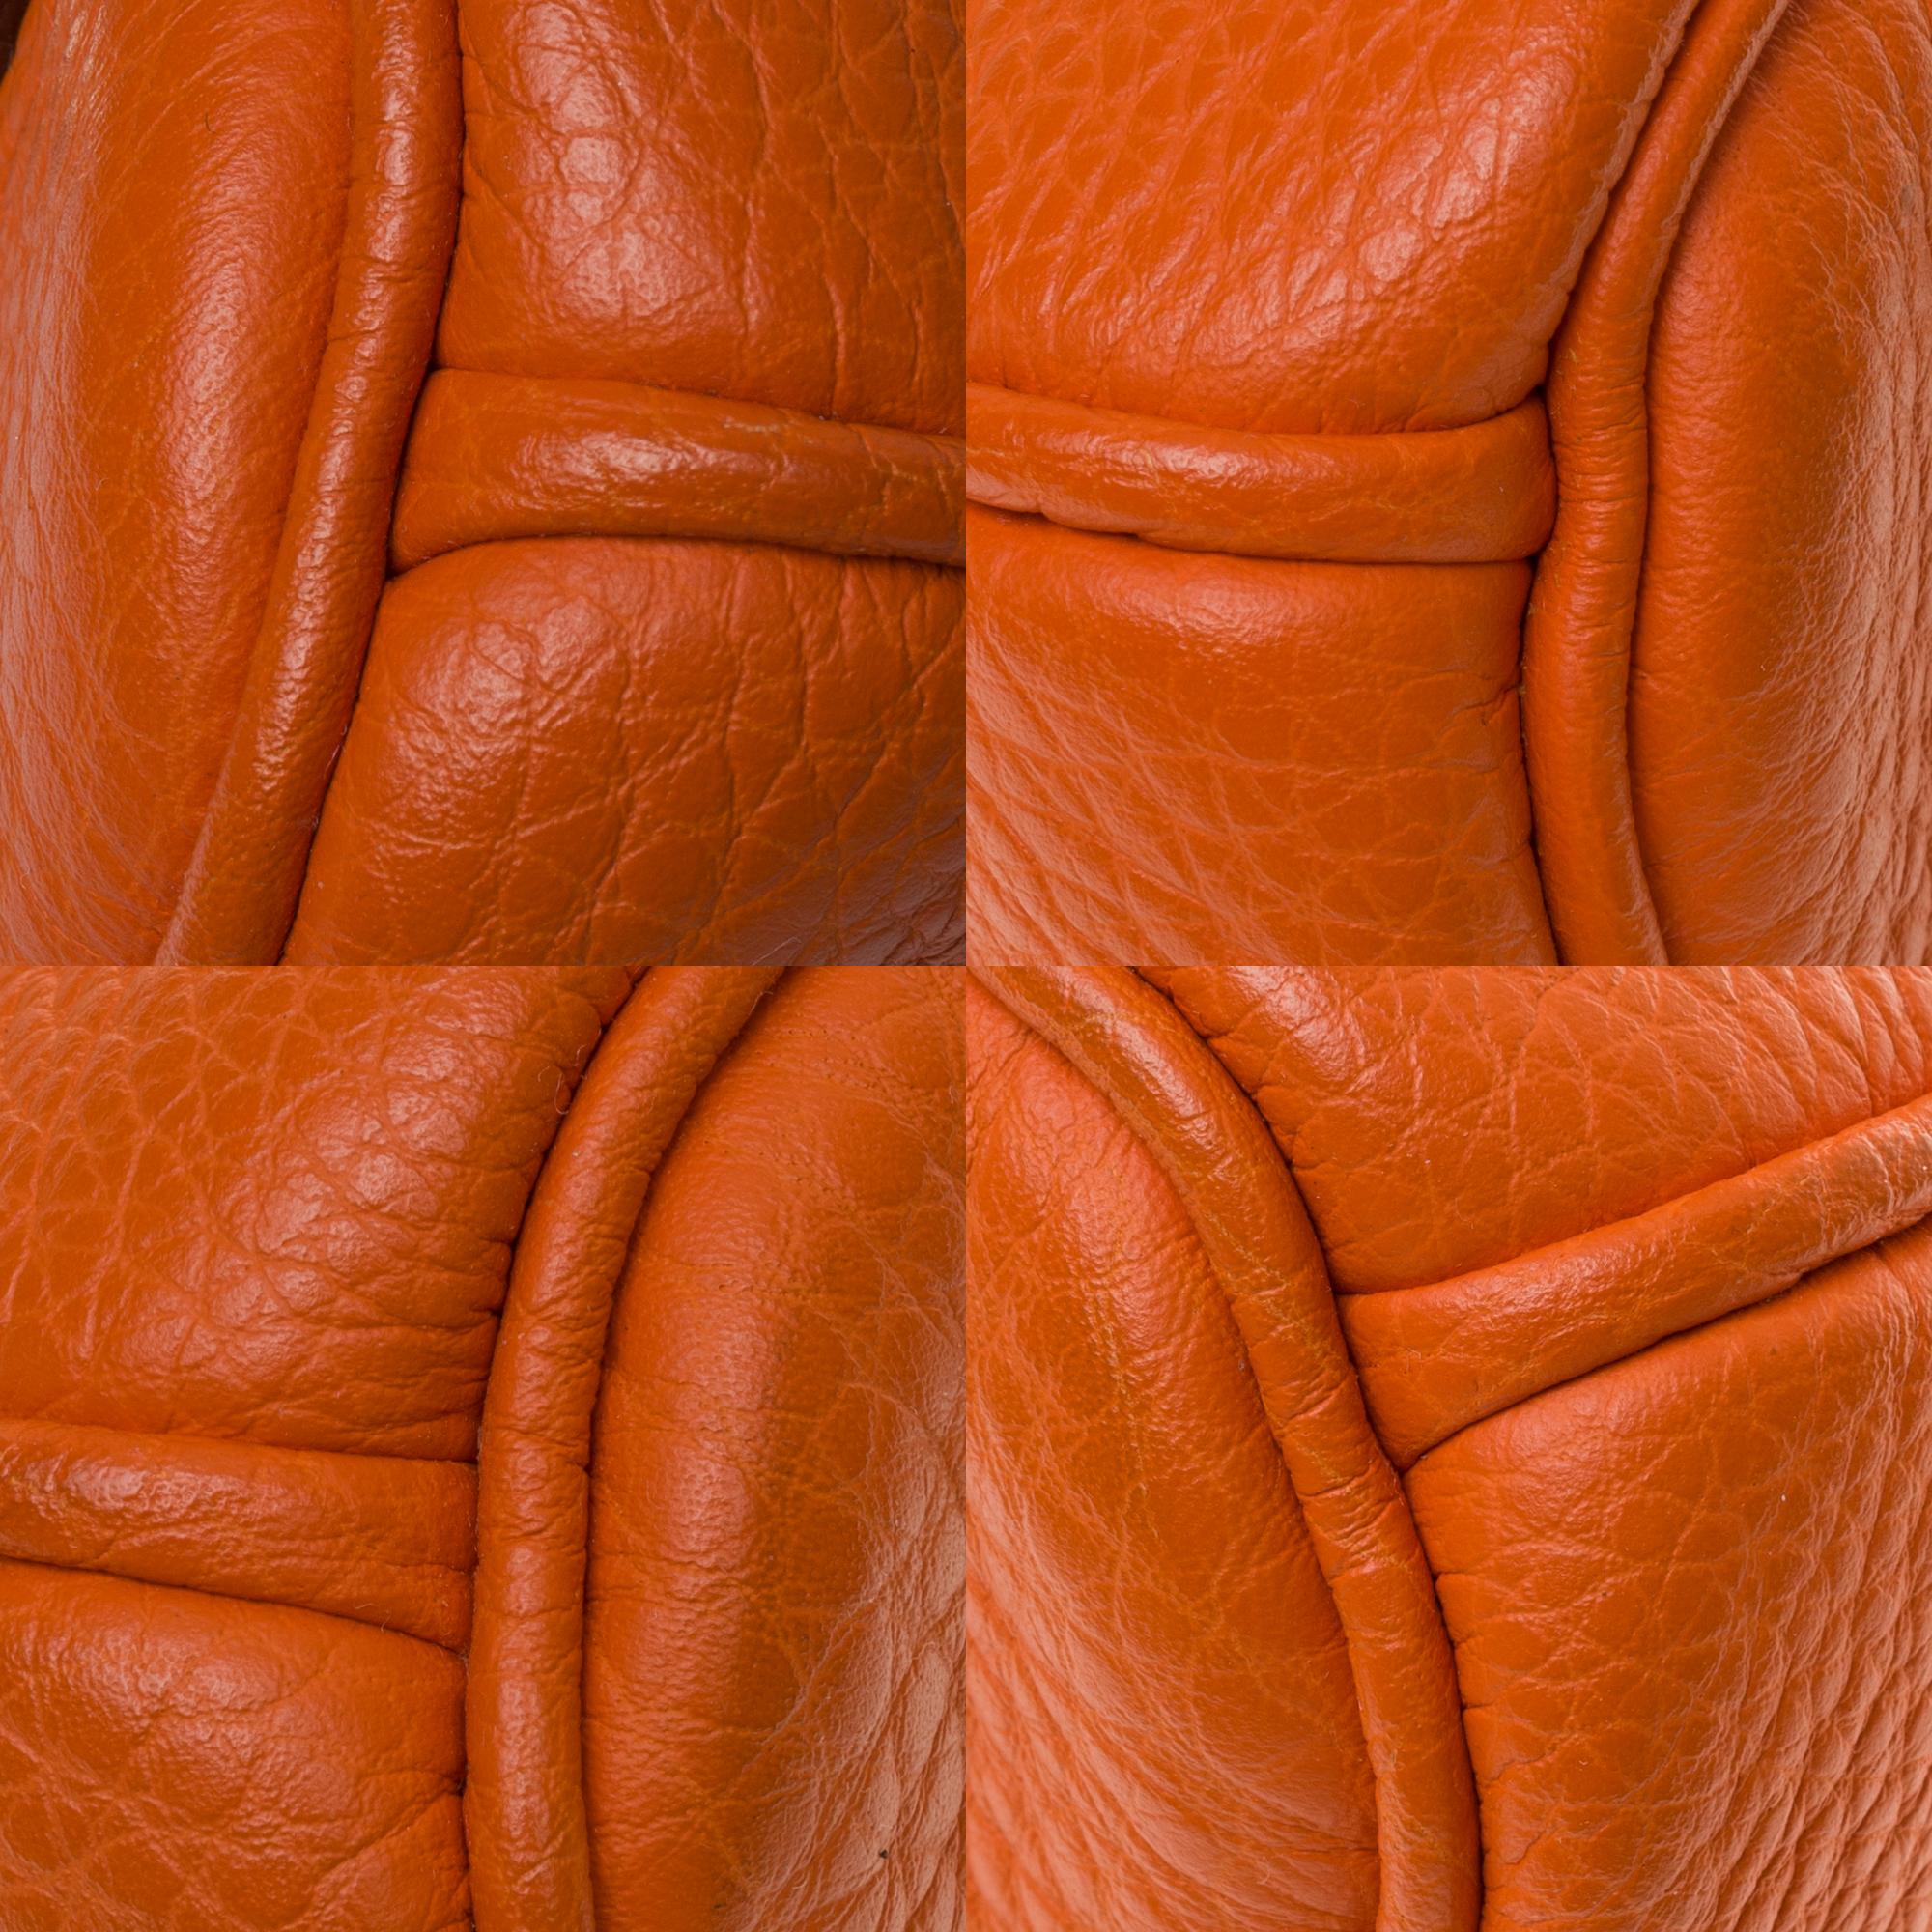 Hermès Birkin 30 handbag in Togo orange leather, PHW, new condition  5